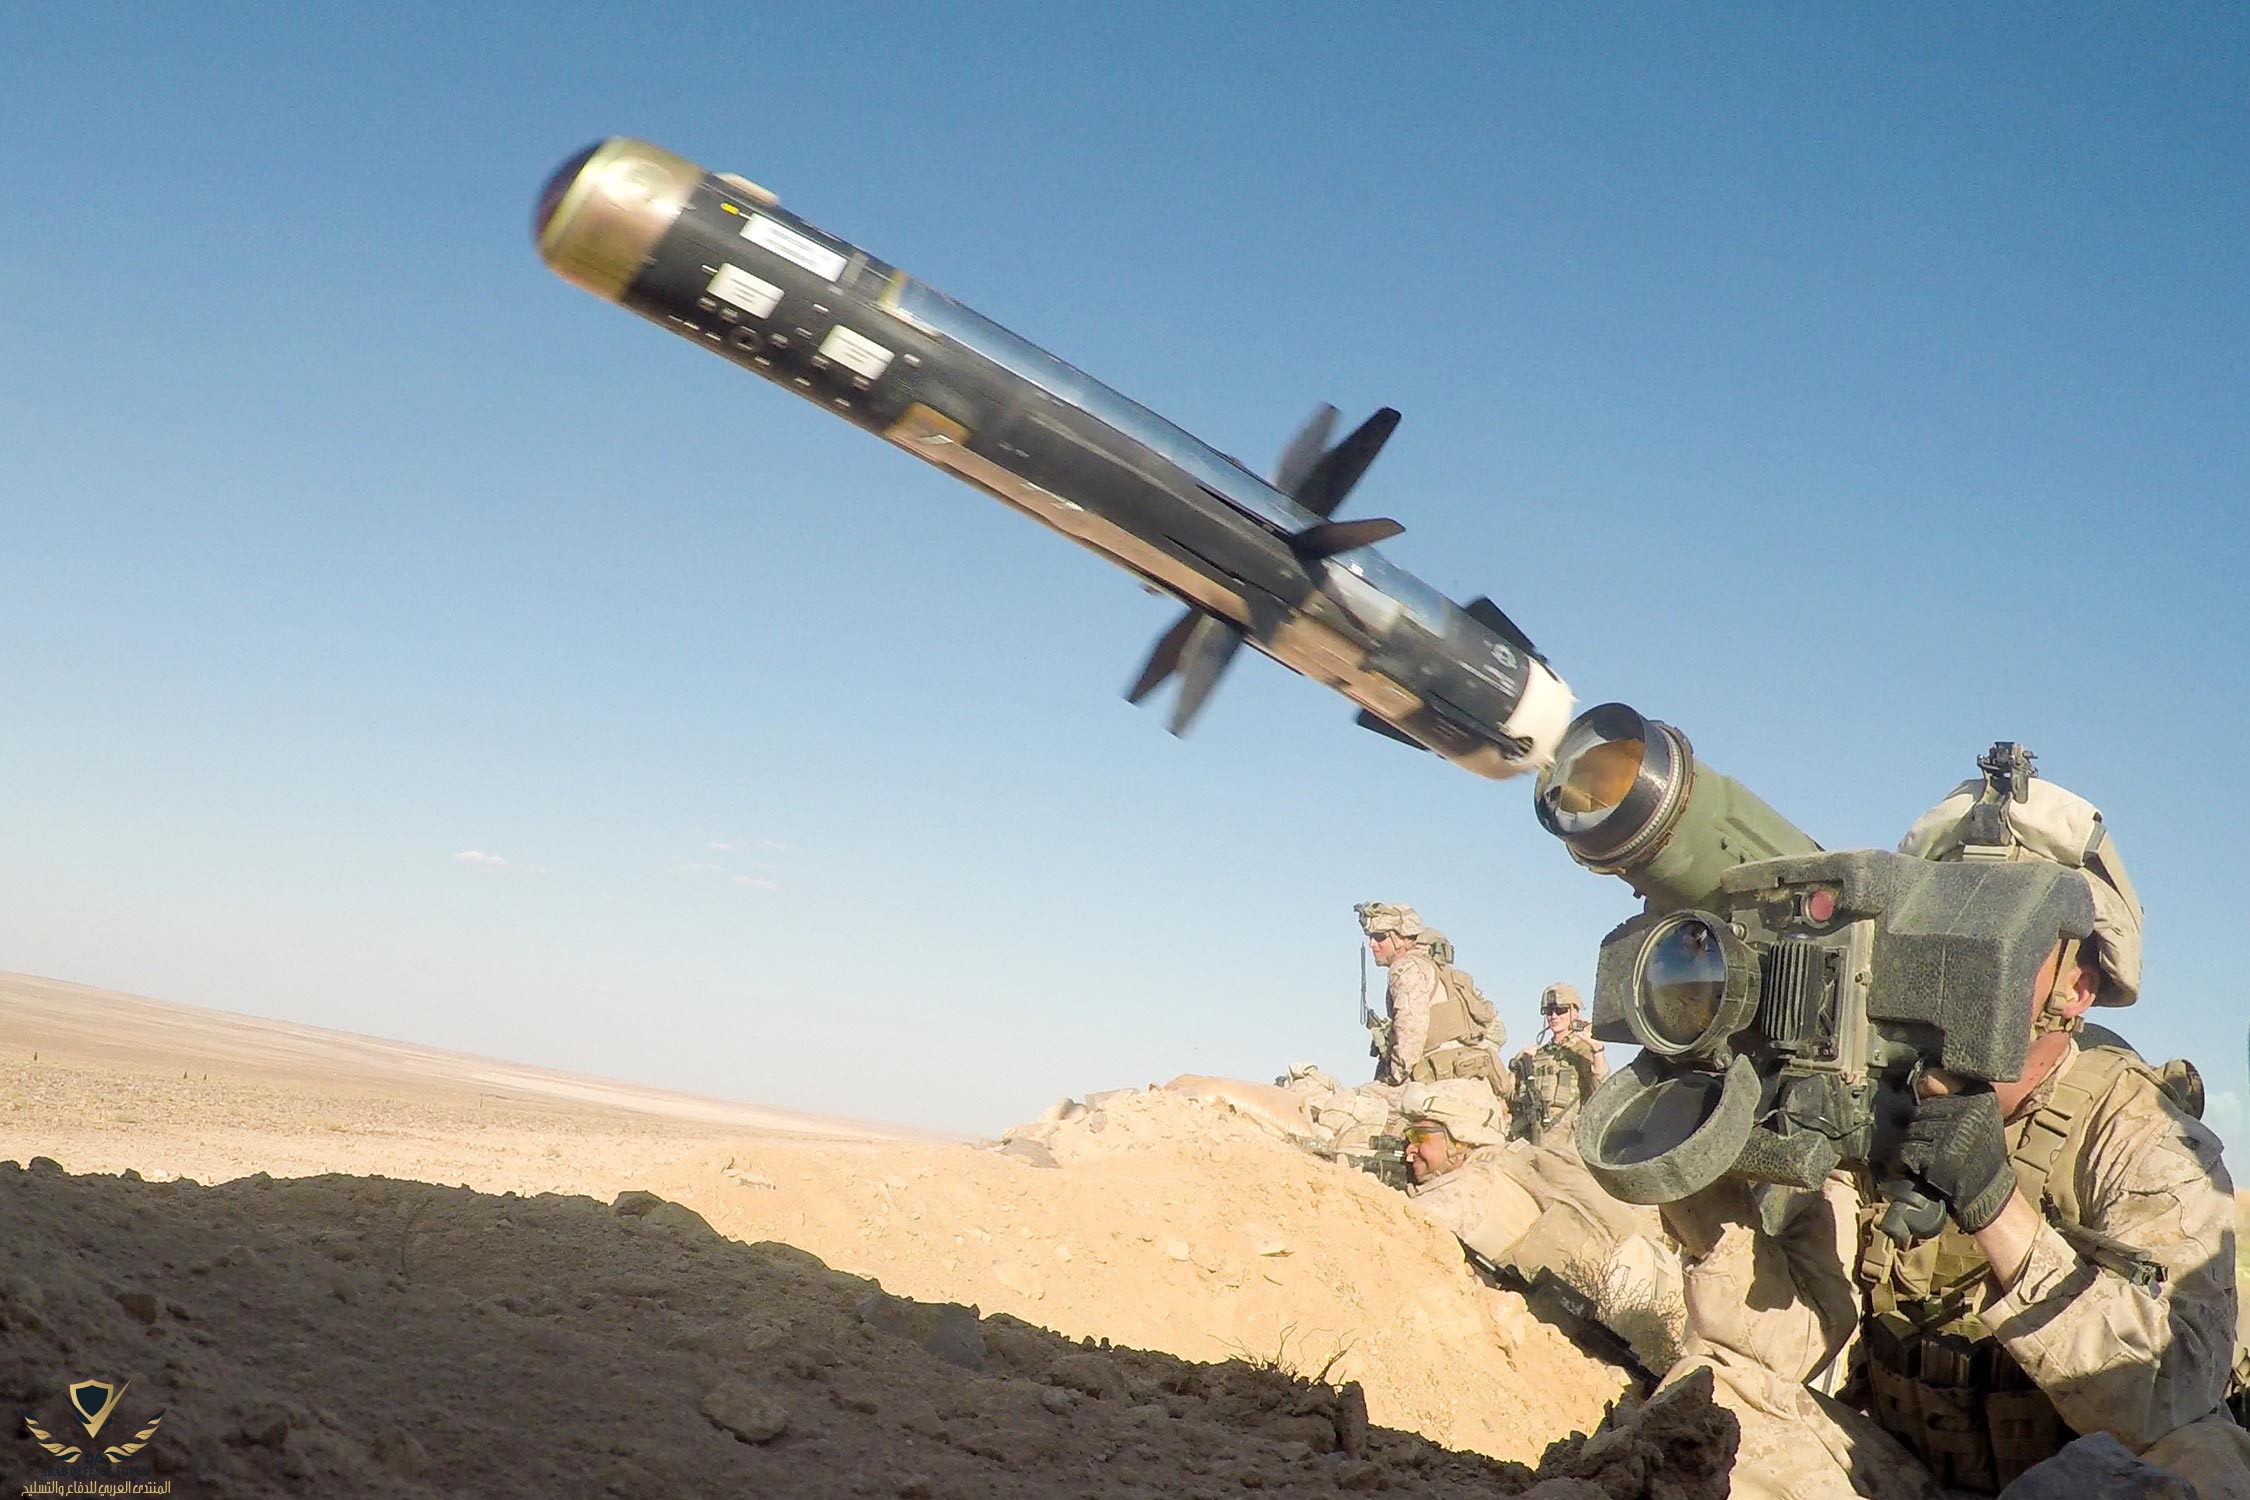 us-marines-javelin-missile-tanf-syria-4727277.jpg